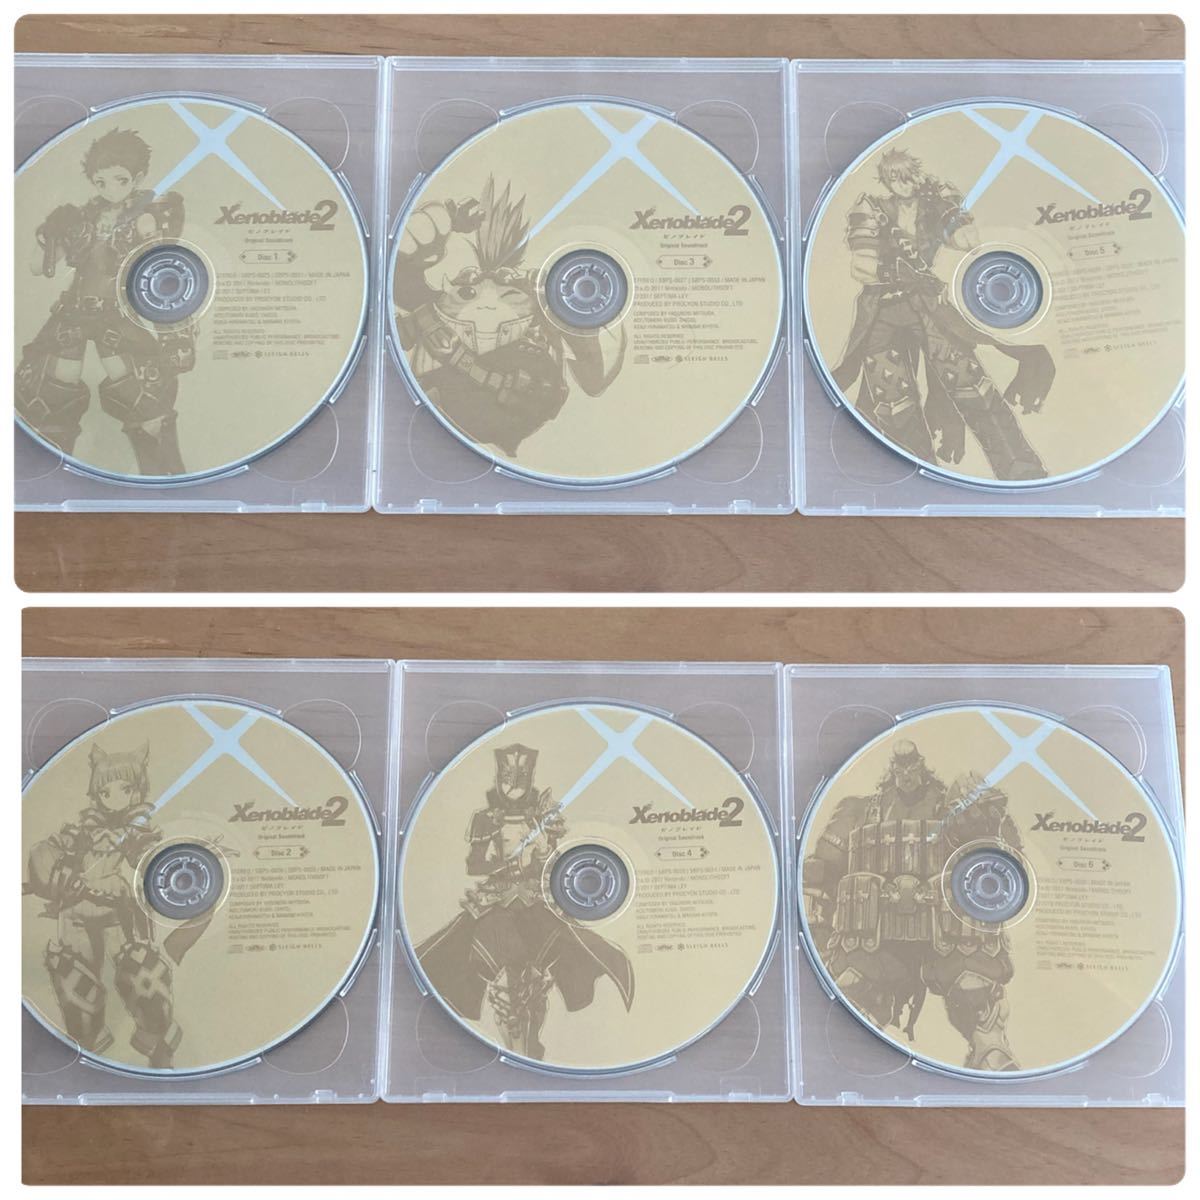 ゼノブレイド2 サウンドトラック 豪華CD音楽コンプリート盤 完全生産